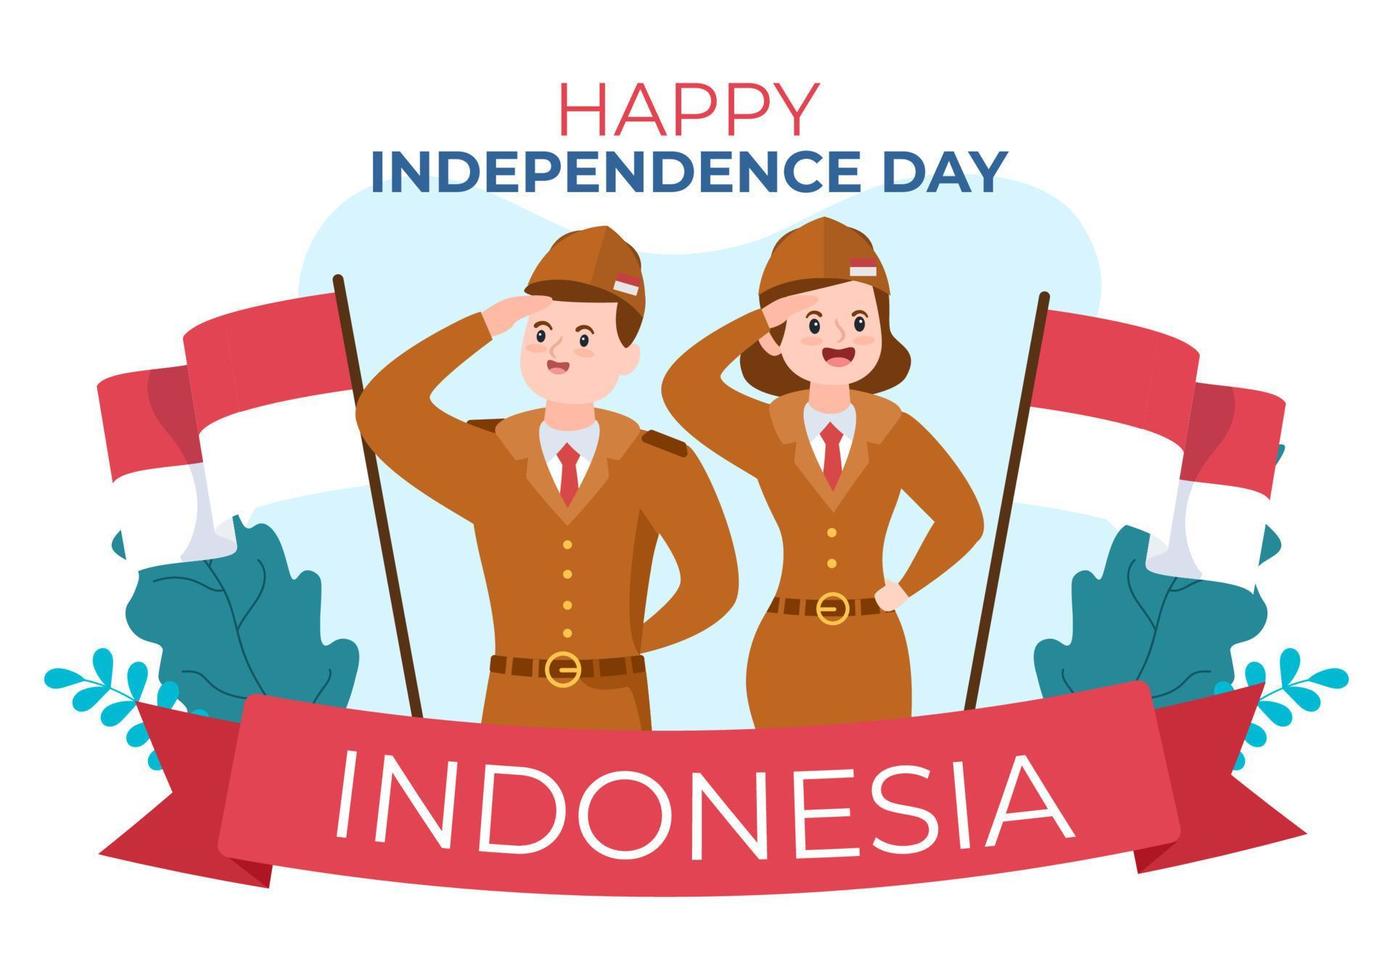 festa dell'indipendenza dell'indonesia il 17 agosto con i giochi tradizionali, il bianco rosso della bandiera e il carattere della gente nell'illustrazione sveglia piana del fondo del fumetto vettore